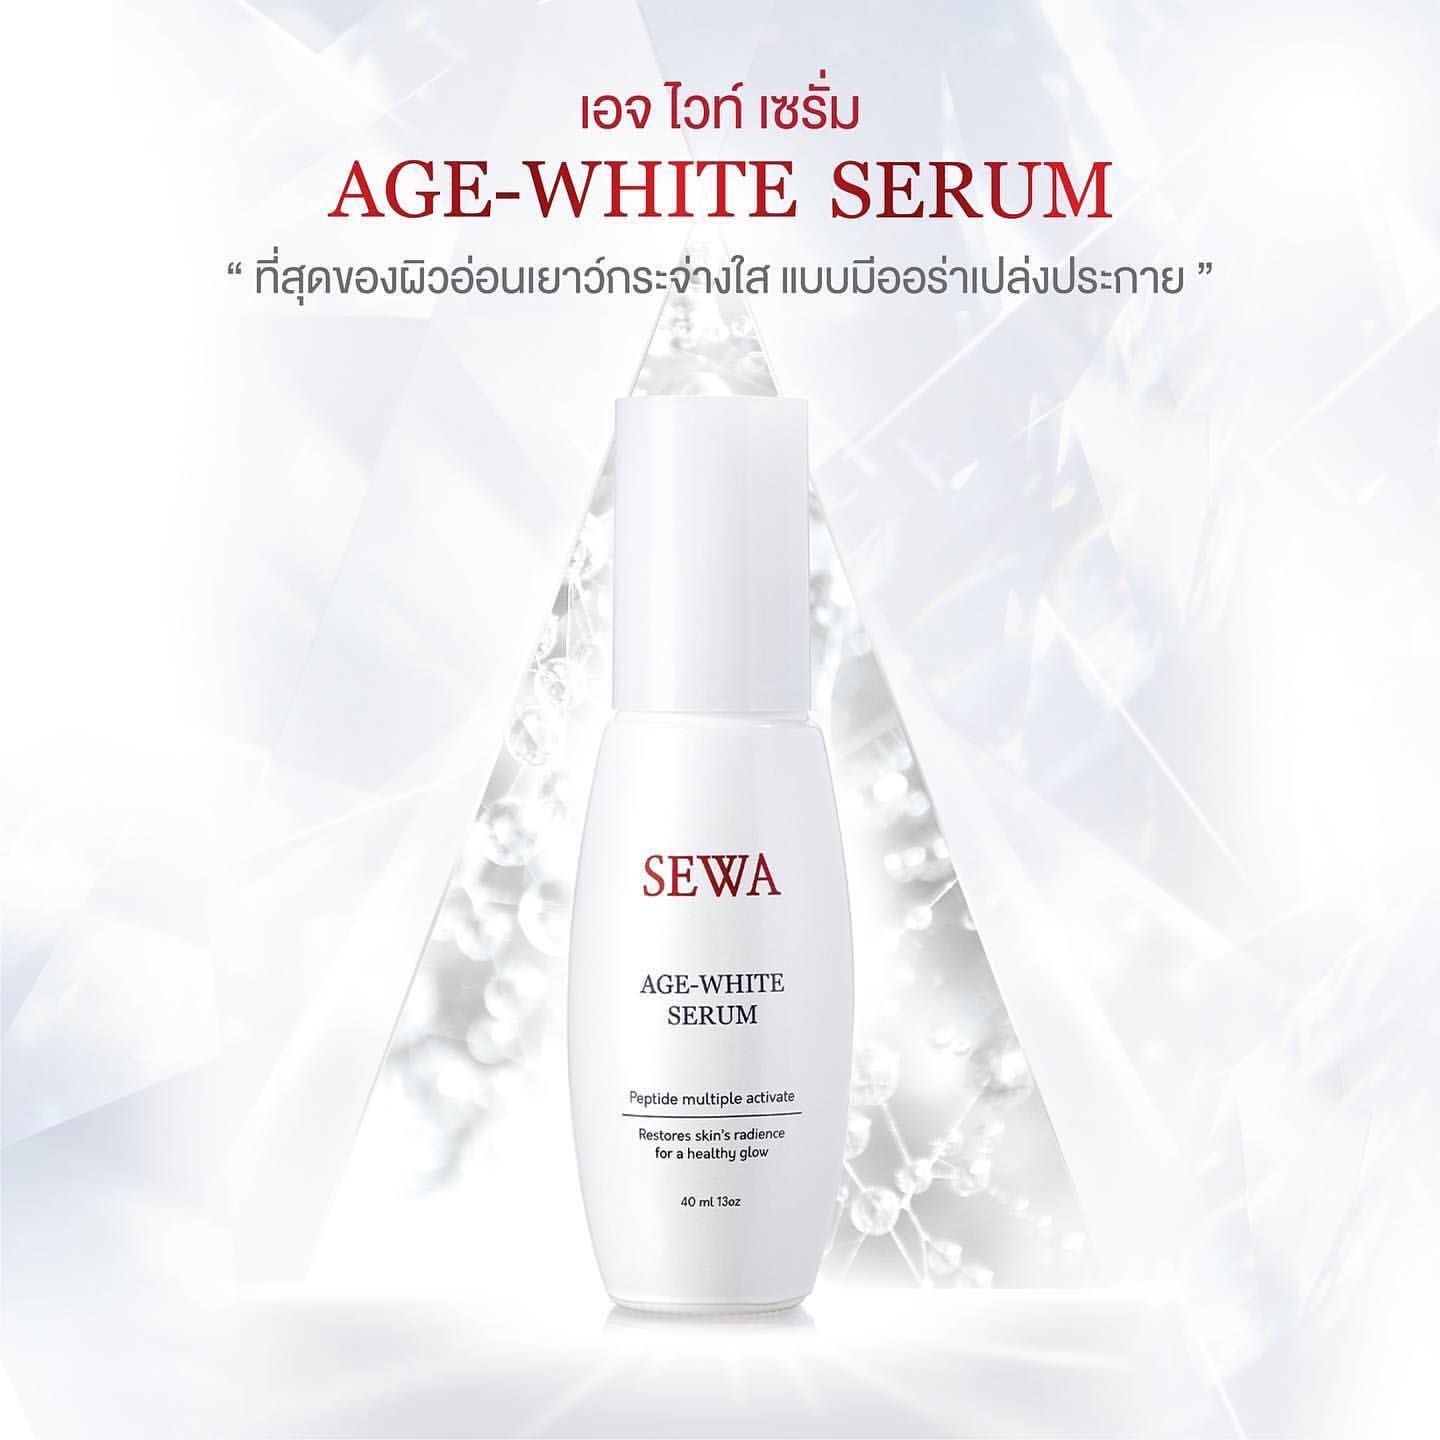 Sewa Age-White Serum 40ml - Asian Beauty Supply